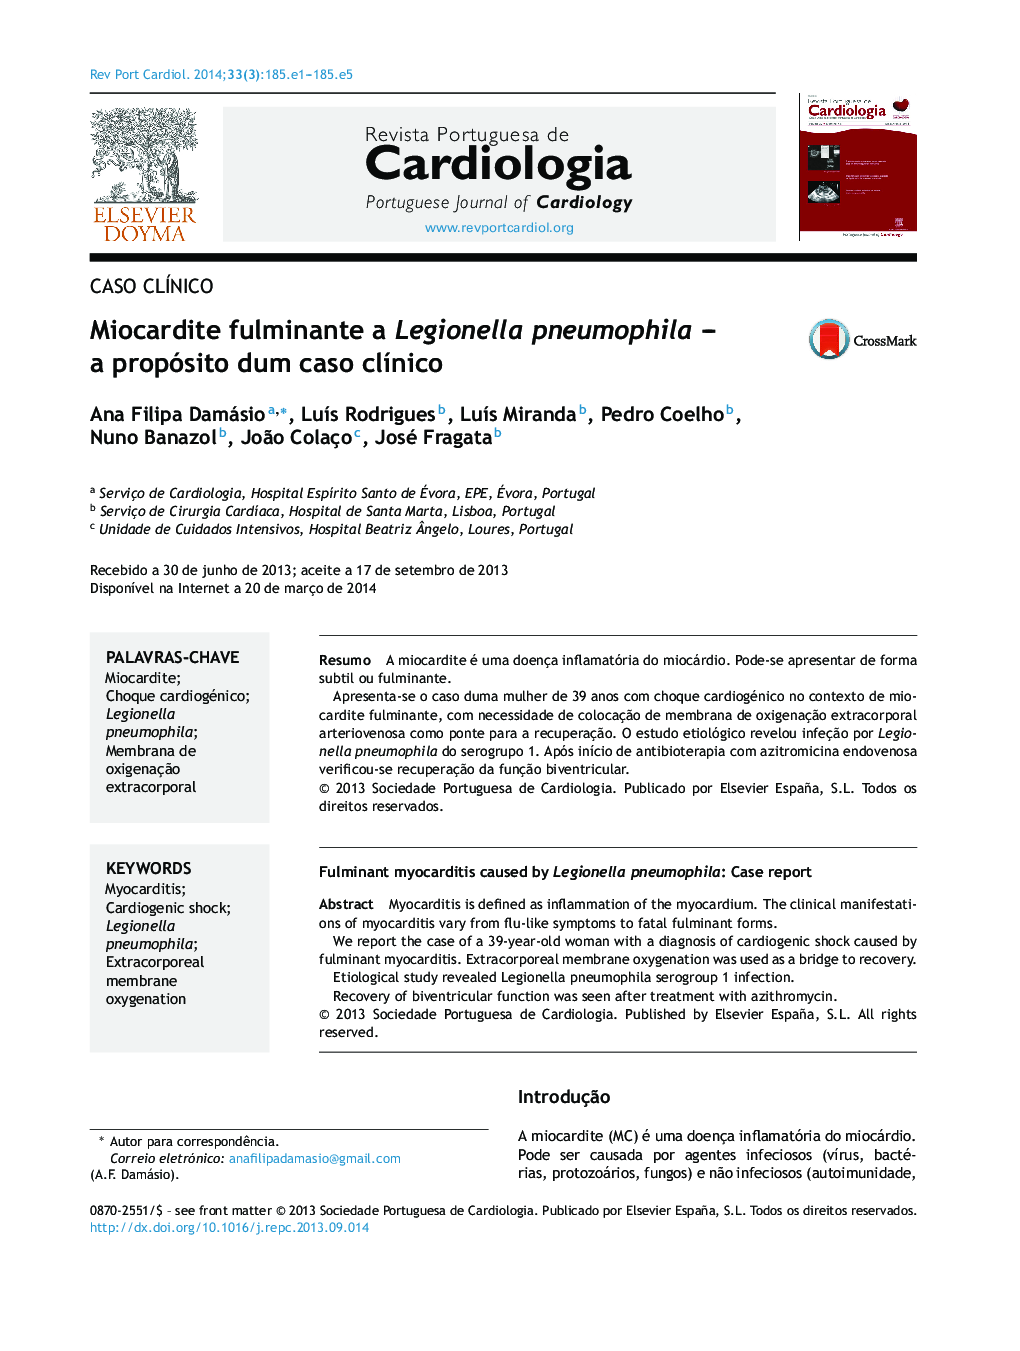 Miocardite fulminante a Legionella pneumophila - a propósito dum caso clÃ­nico